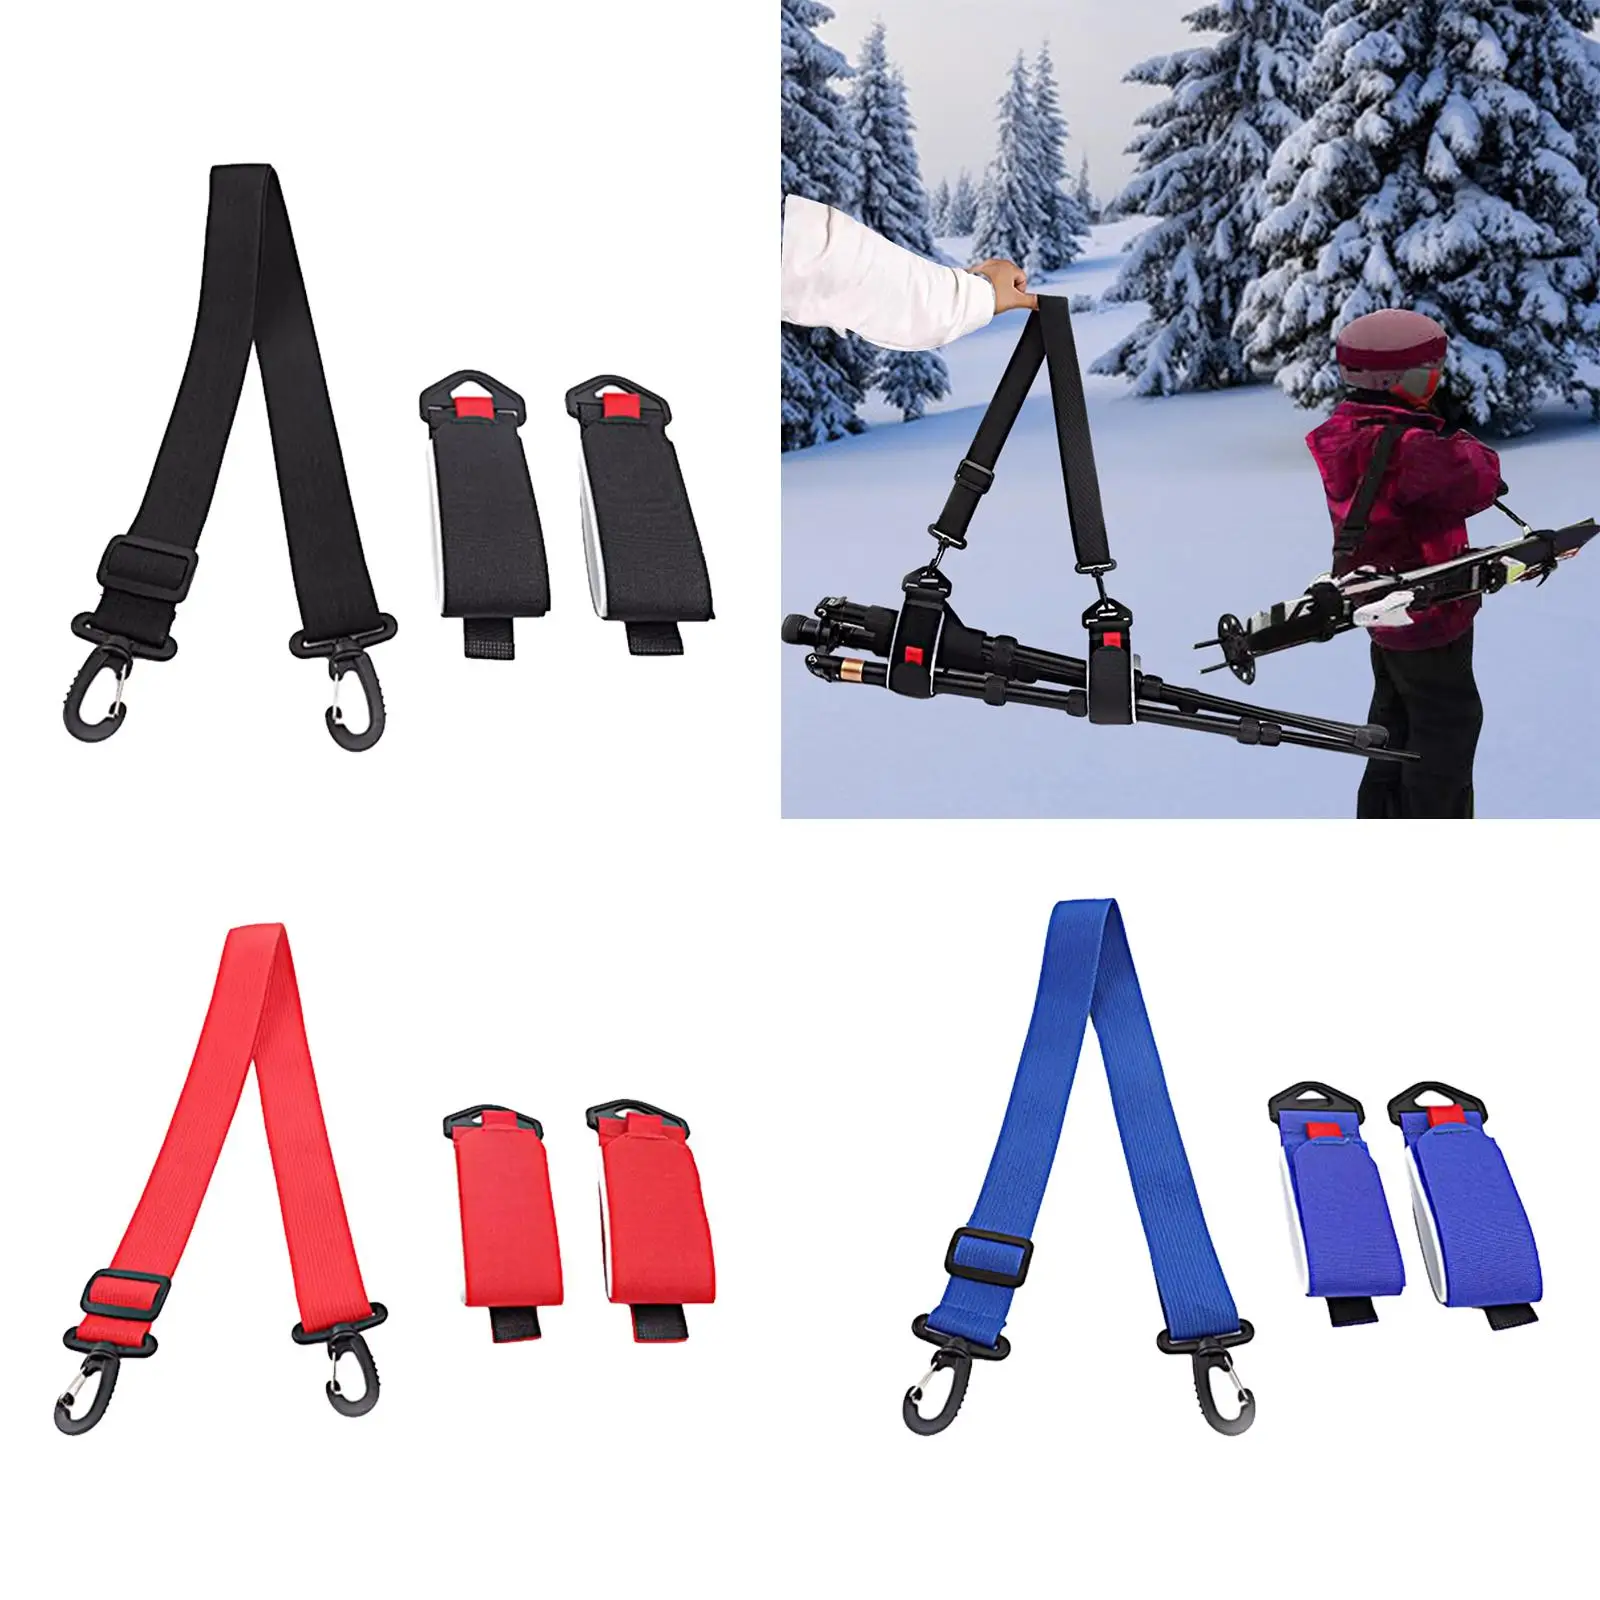 Ski Pole Carrier Strap Adult Teens Ski Shoulder Carrier Lash Ski Handle Strap for Skateboarding Ski Board Skiing Outdoor Sports